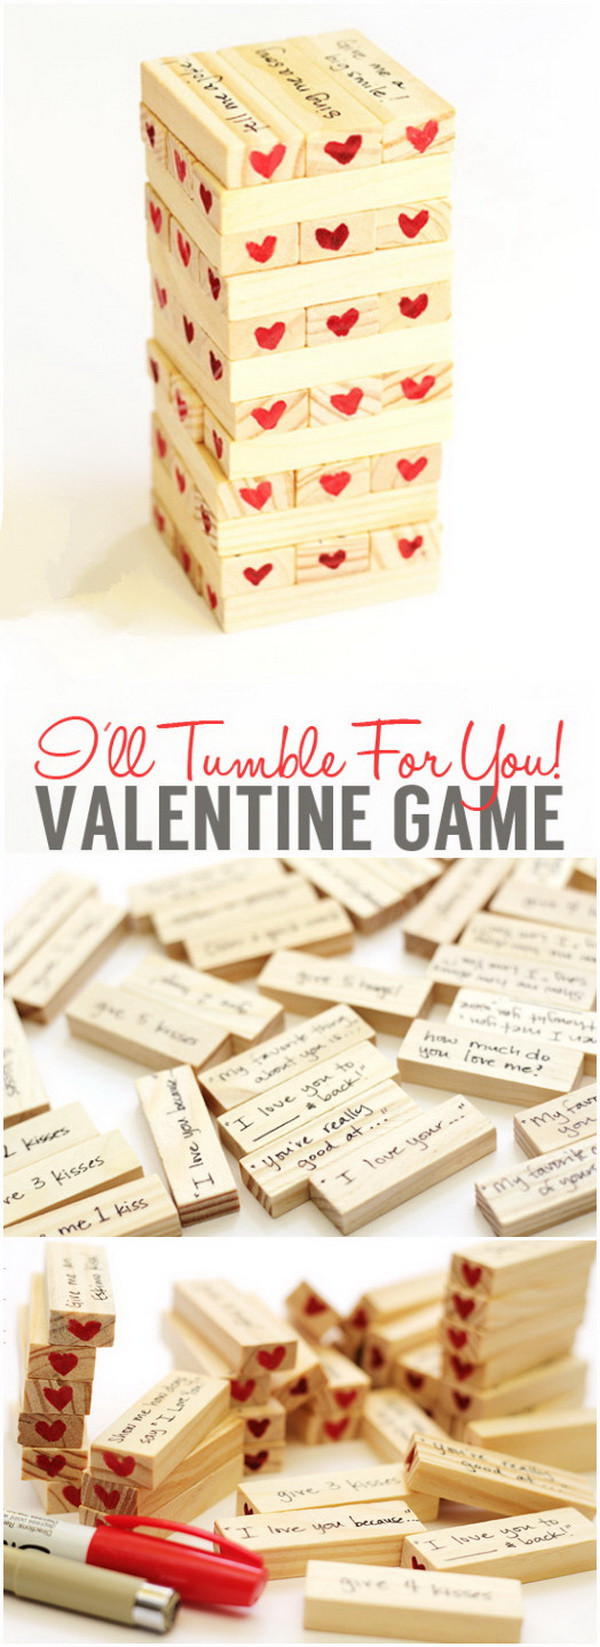 Valentine Boyfriend Gift Ideas
 Easy DIY Valentine s Day Gifts for Boyfriend Listing More